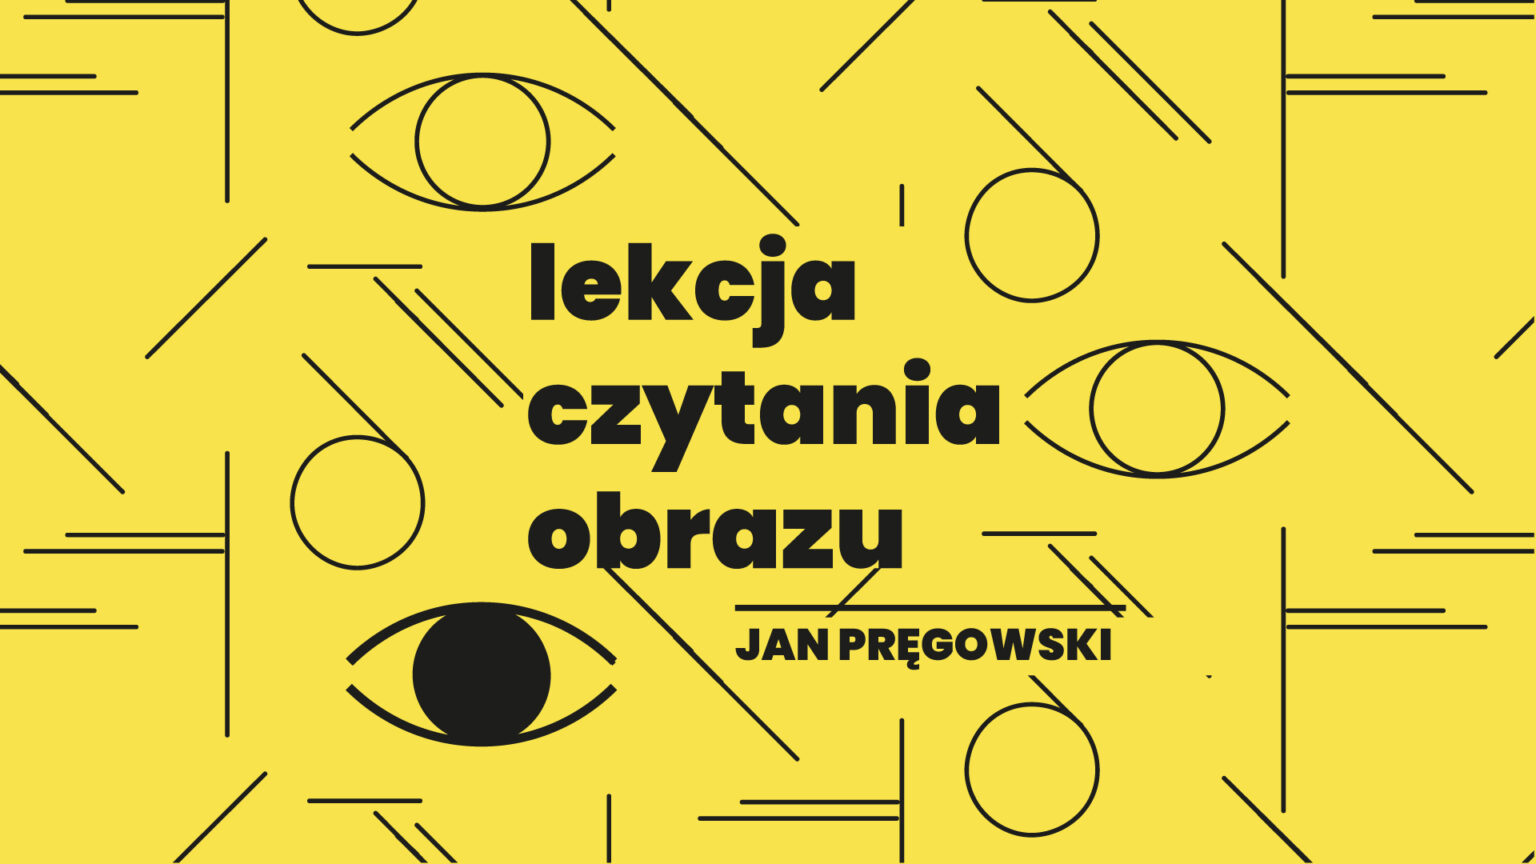 Lekcja czytania obrazu: Jan Pręgowski